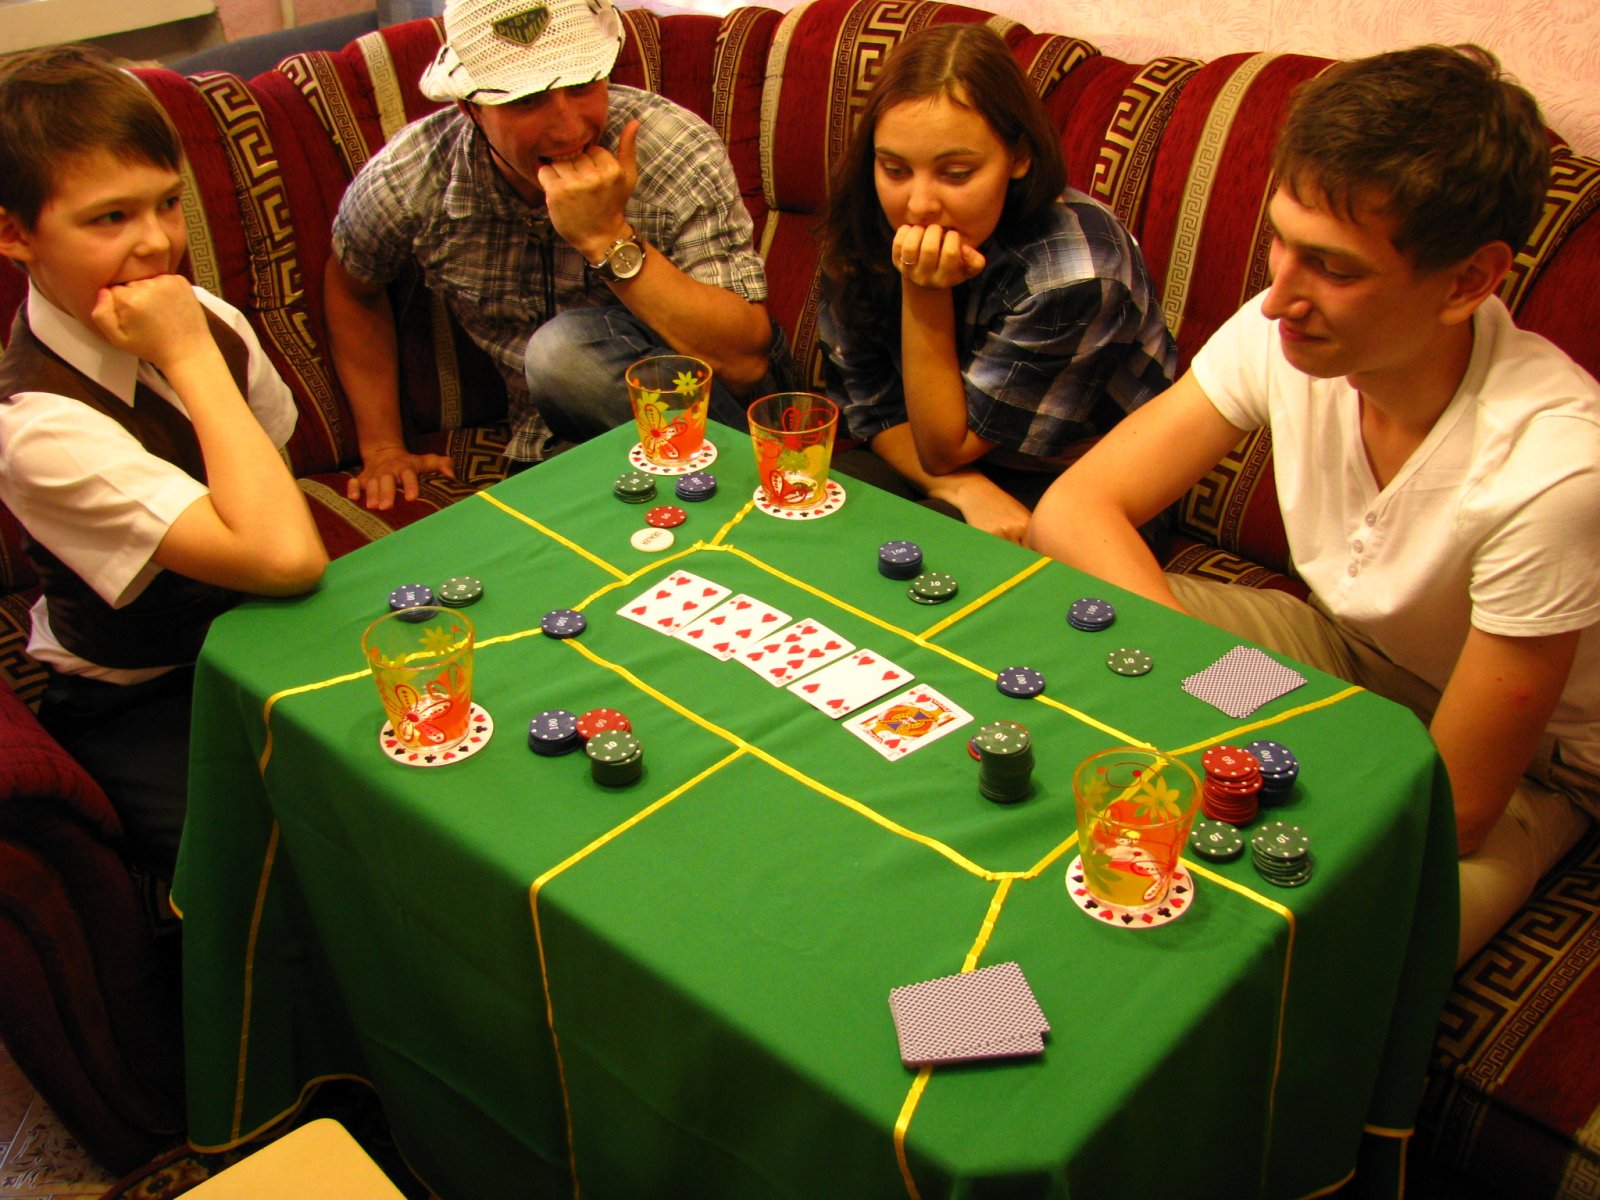 Какие ошибки наиболее часто допускают новички в покере? ТОП 5 ошибок новичков